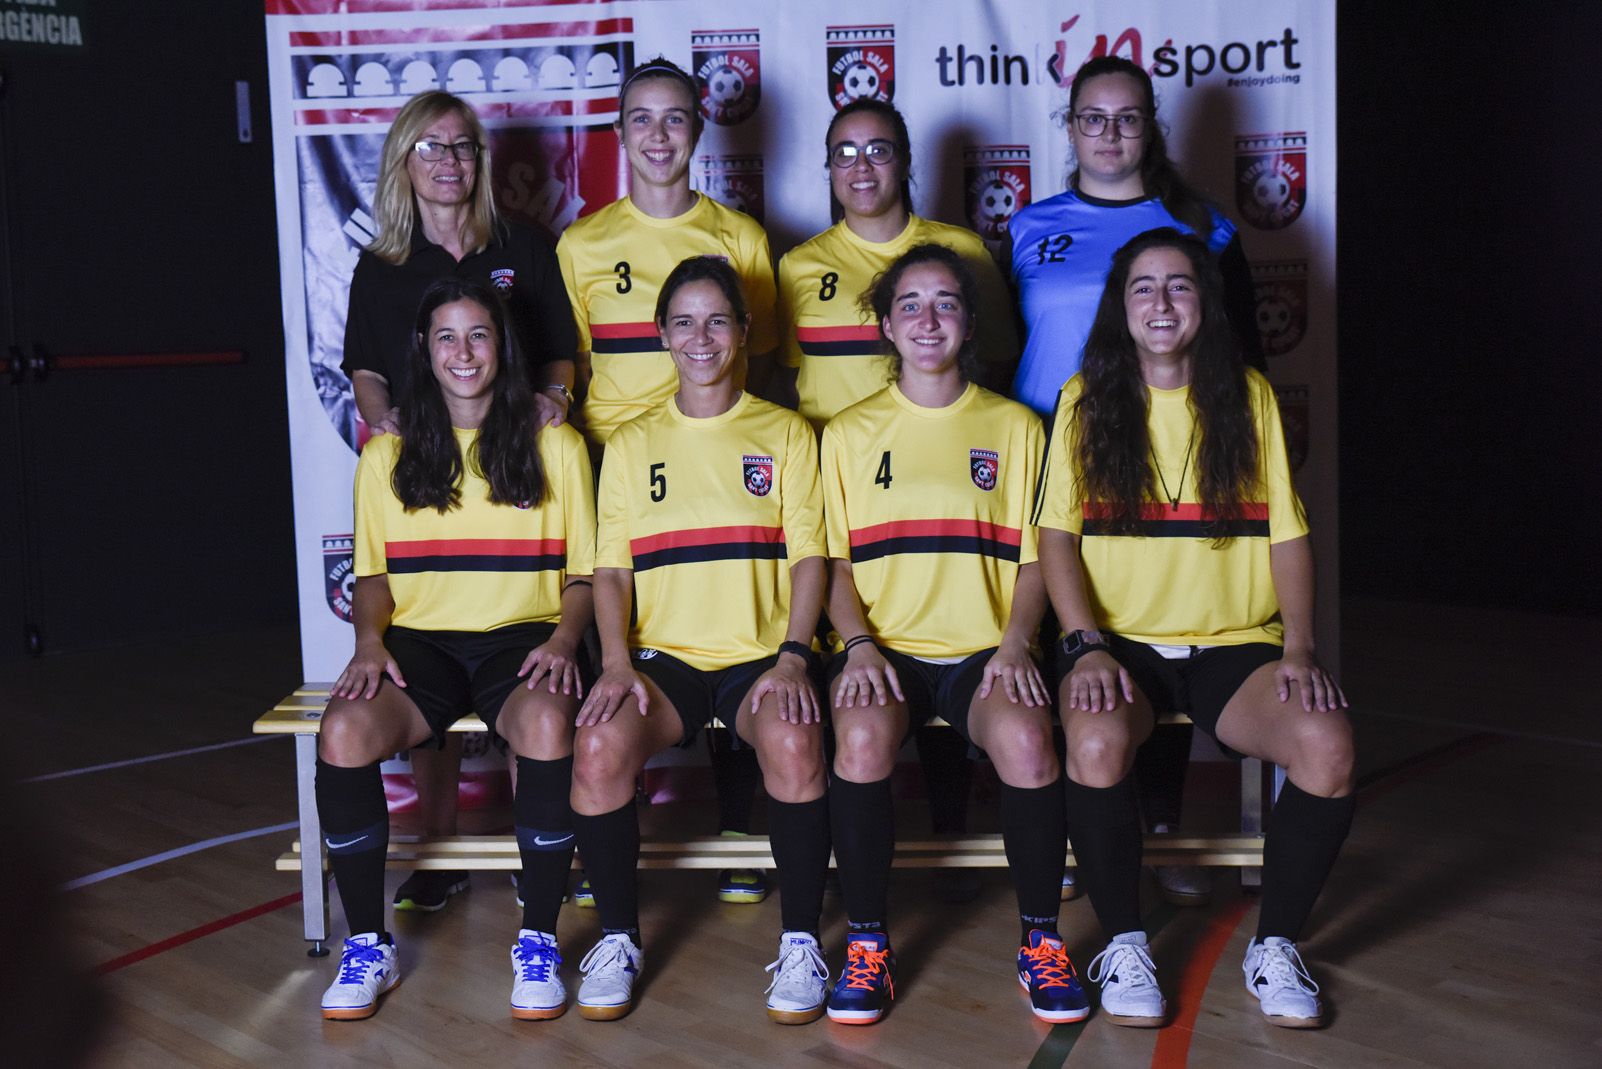 Presentació de ls equips de Futbol Sala Sant Cugat. Foto: Bernat Millet.